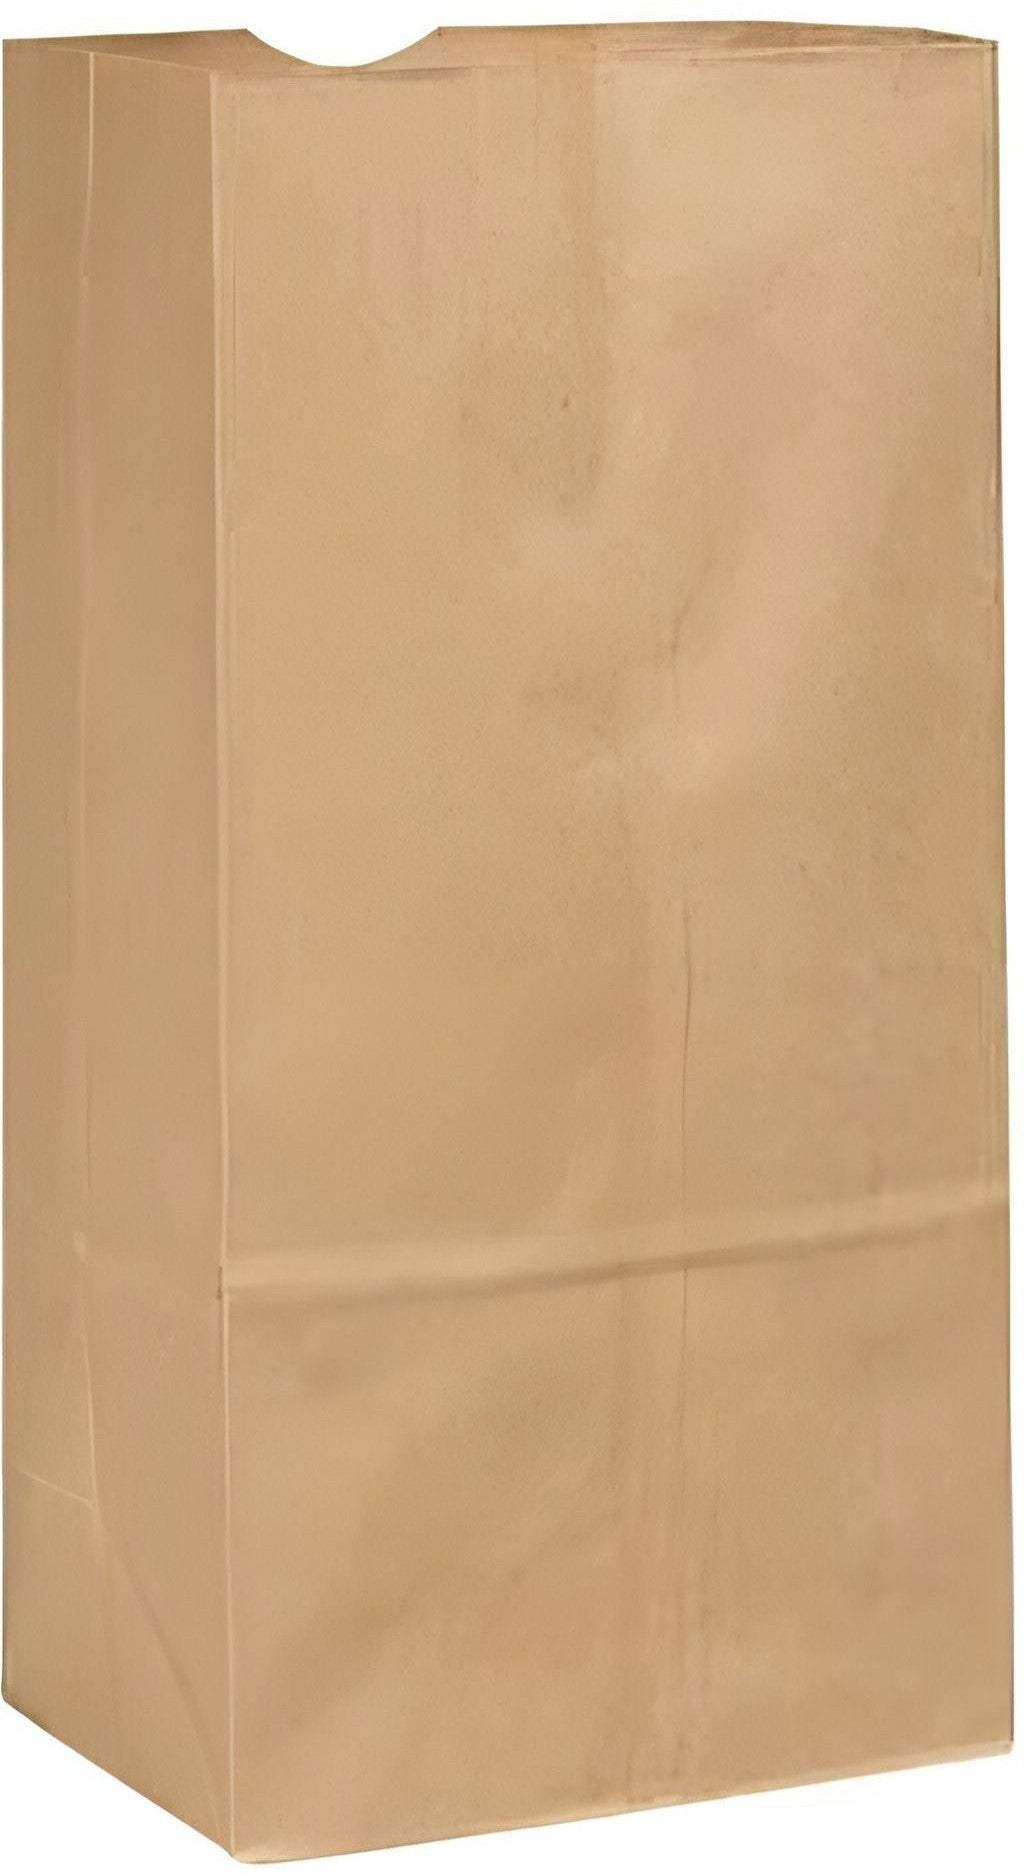 Atlas Paper Bag - 4.75 X 2.75 X 9", 3lb Brown Paper Bags, 500/Bn - 4030002